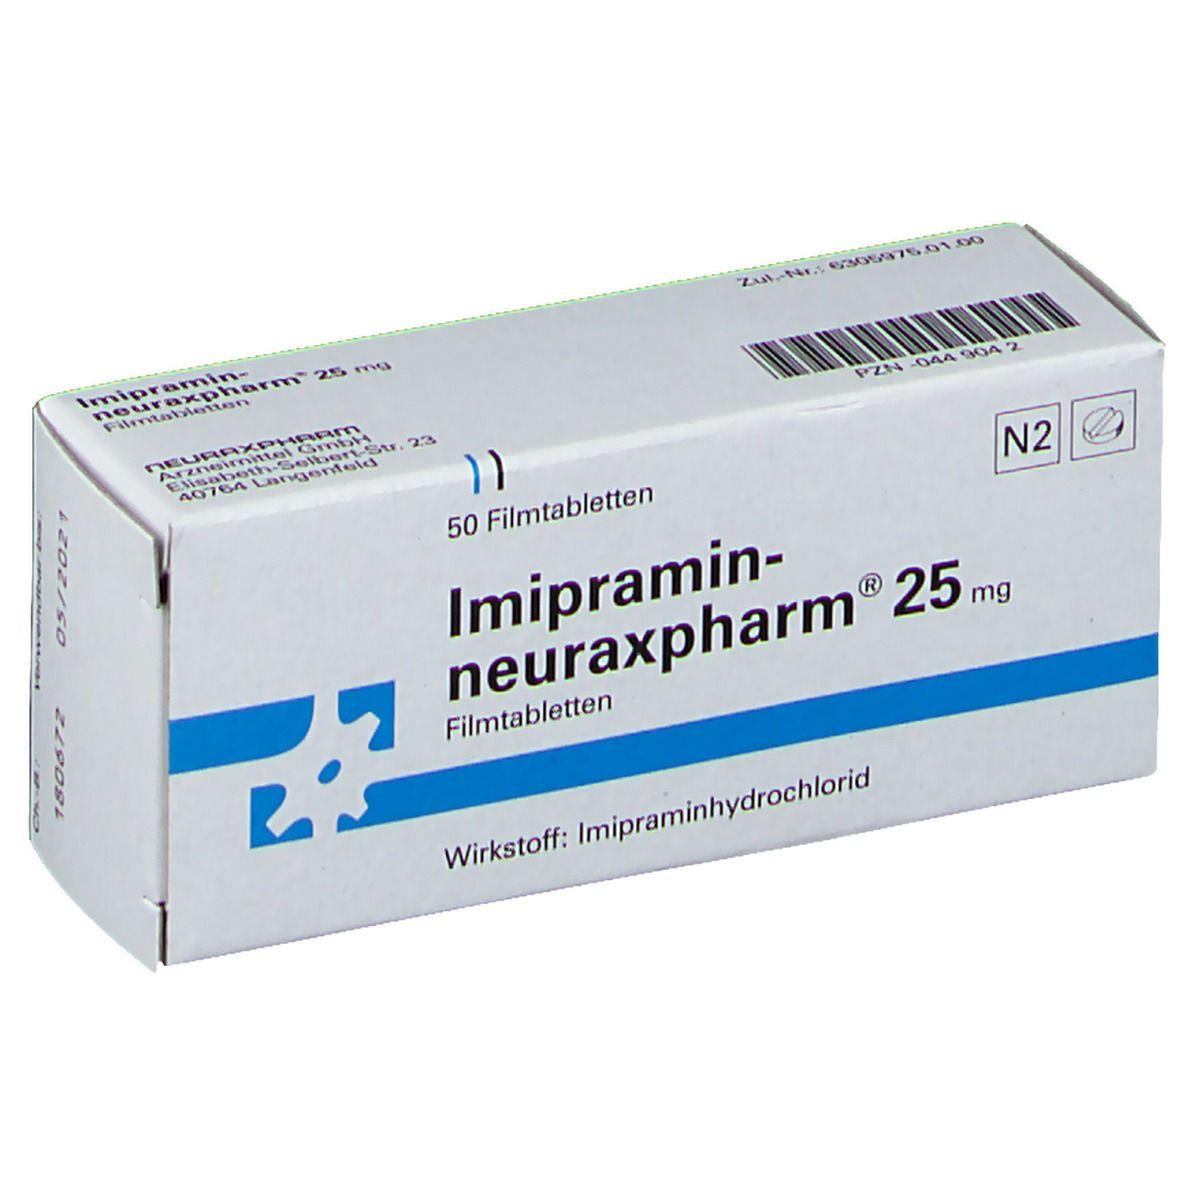 Imipramin-neuraxpharm® 25 mg